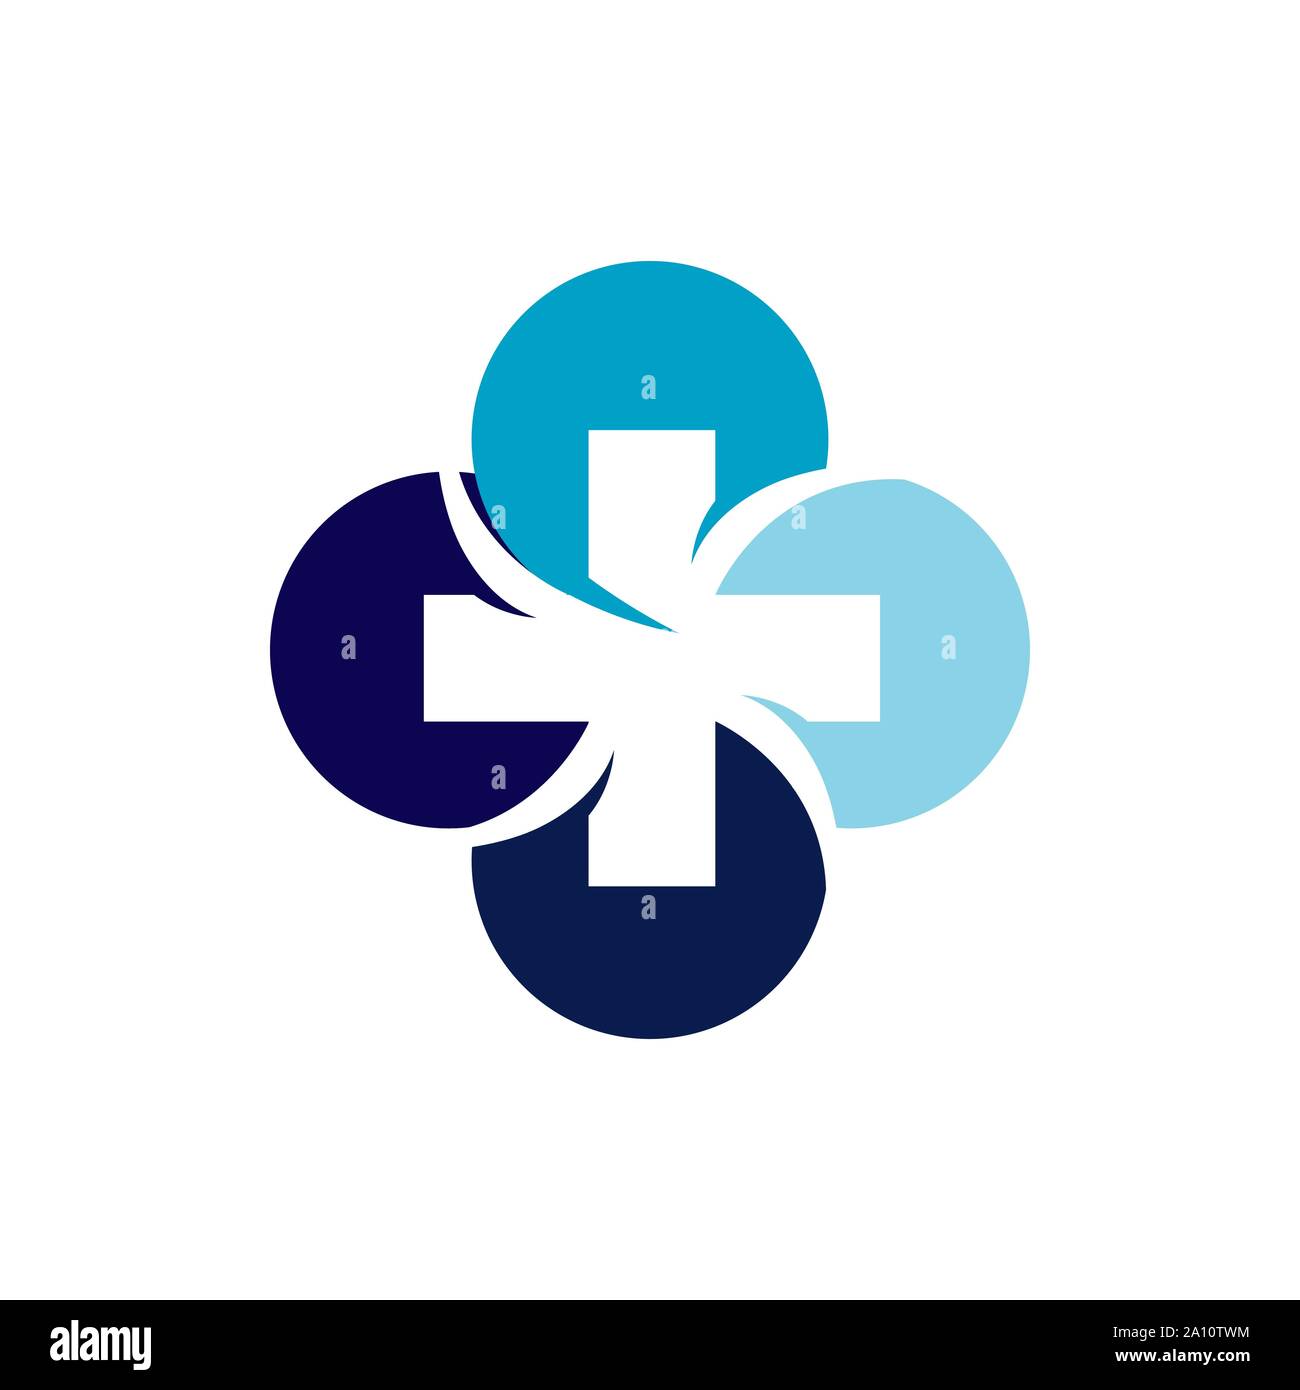 creative health care medical logo design logo vector template illustration Stock Vector